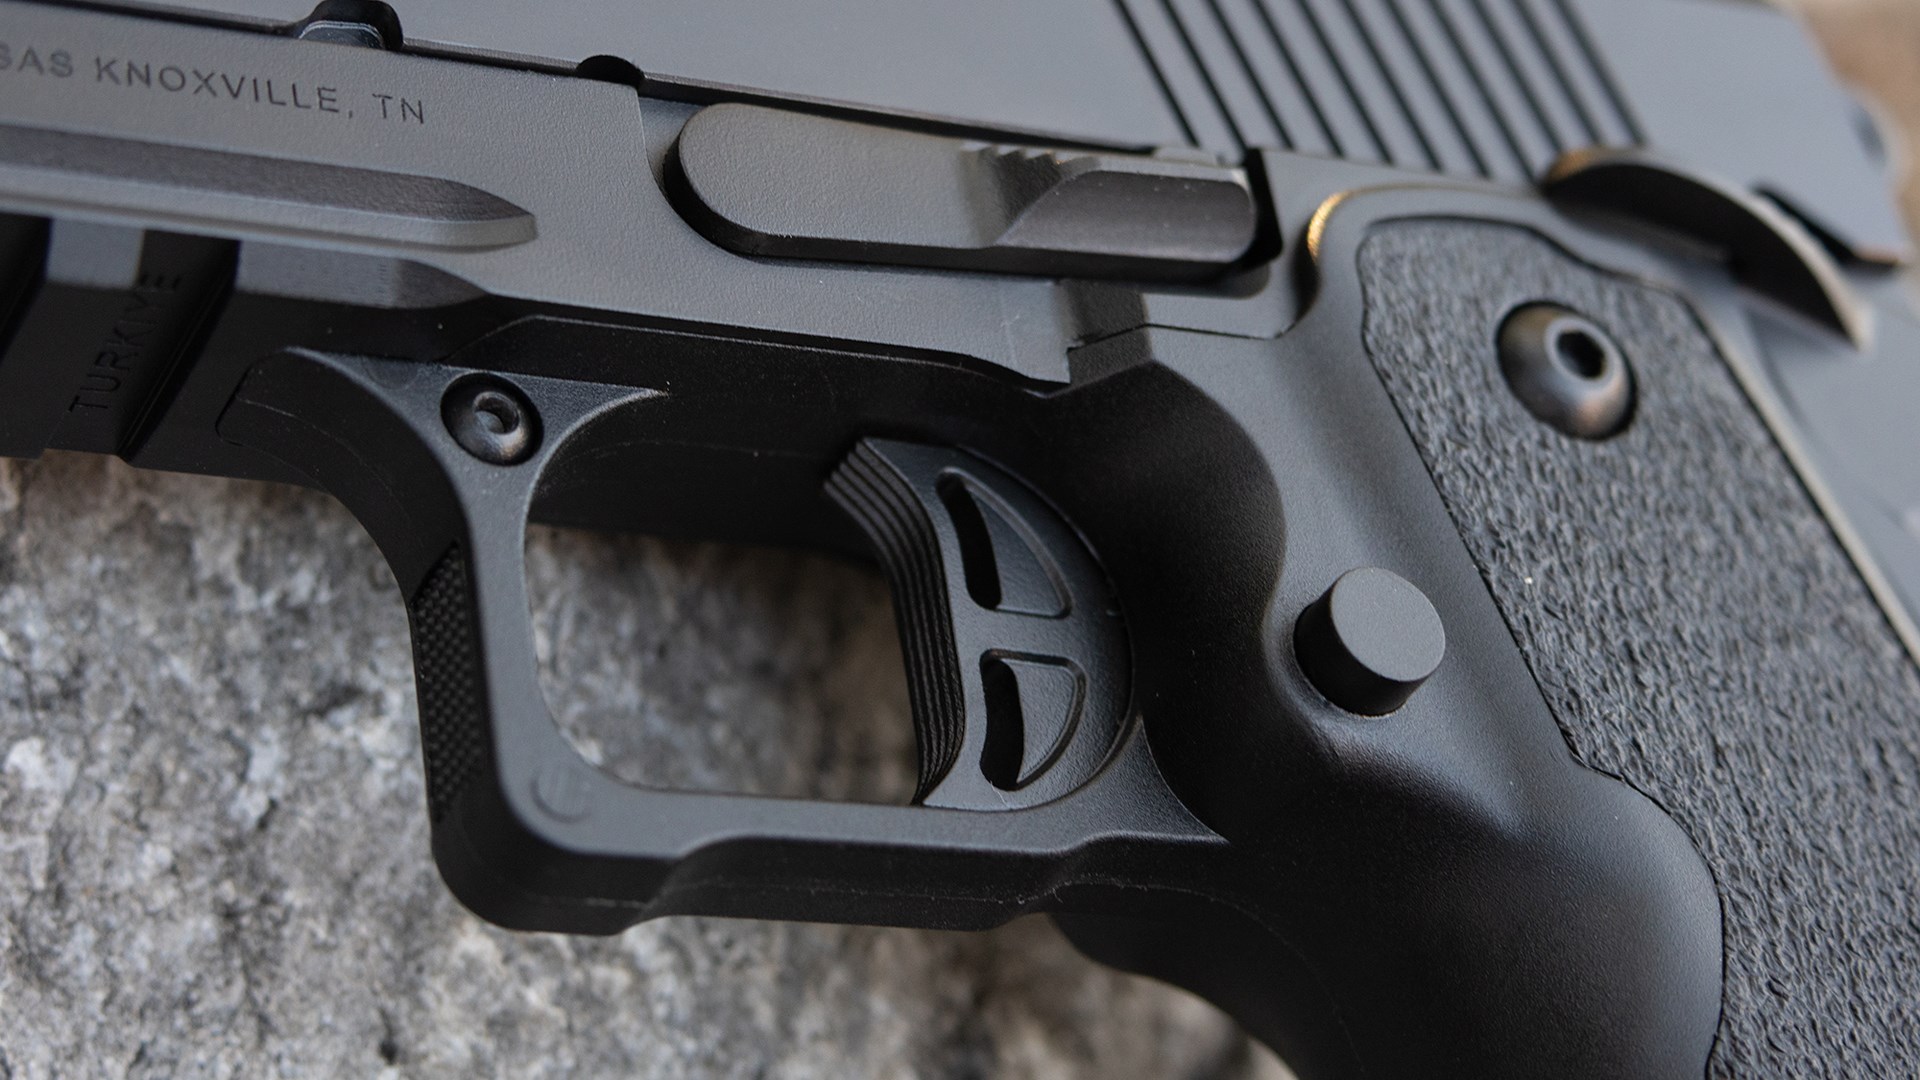 Trigger and hybrid frame design on the Tisas B9R DS pistol.